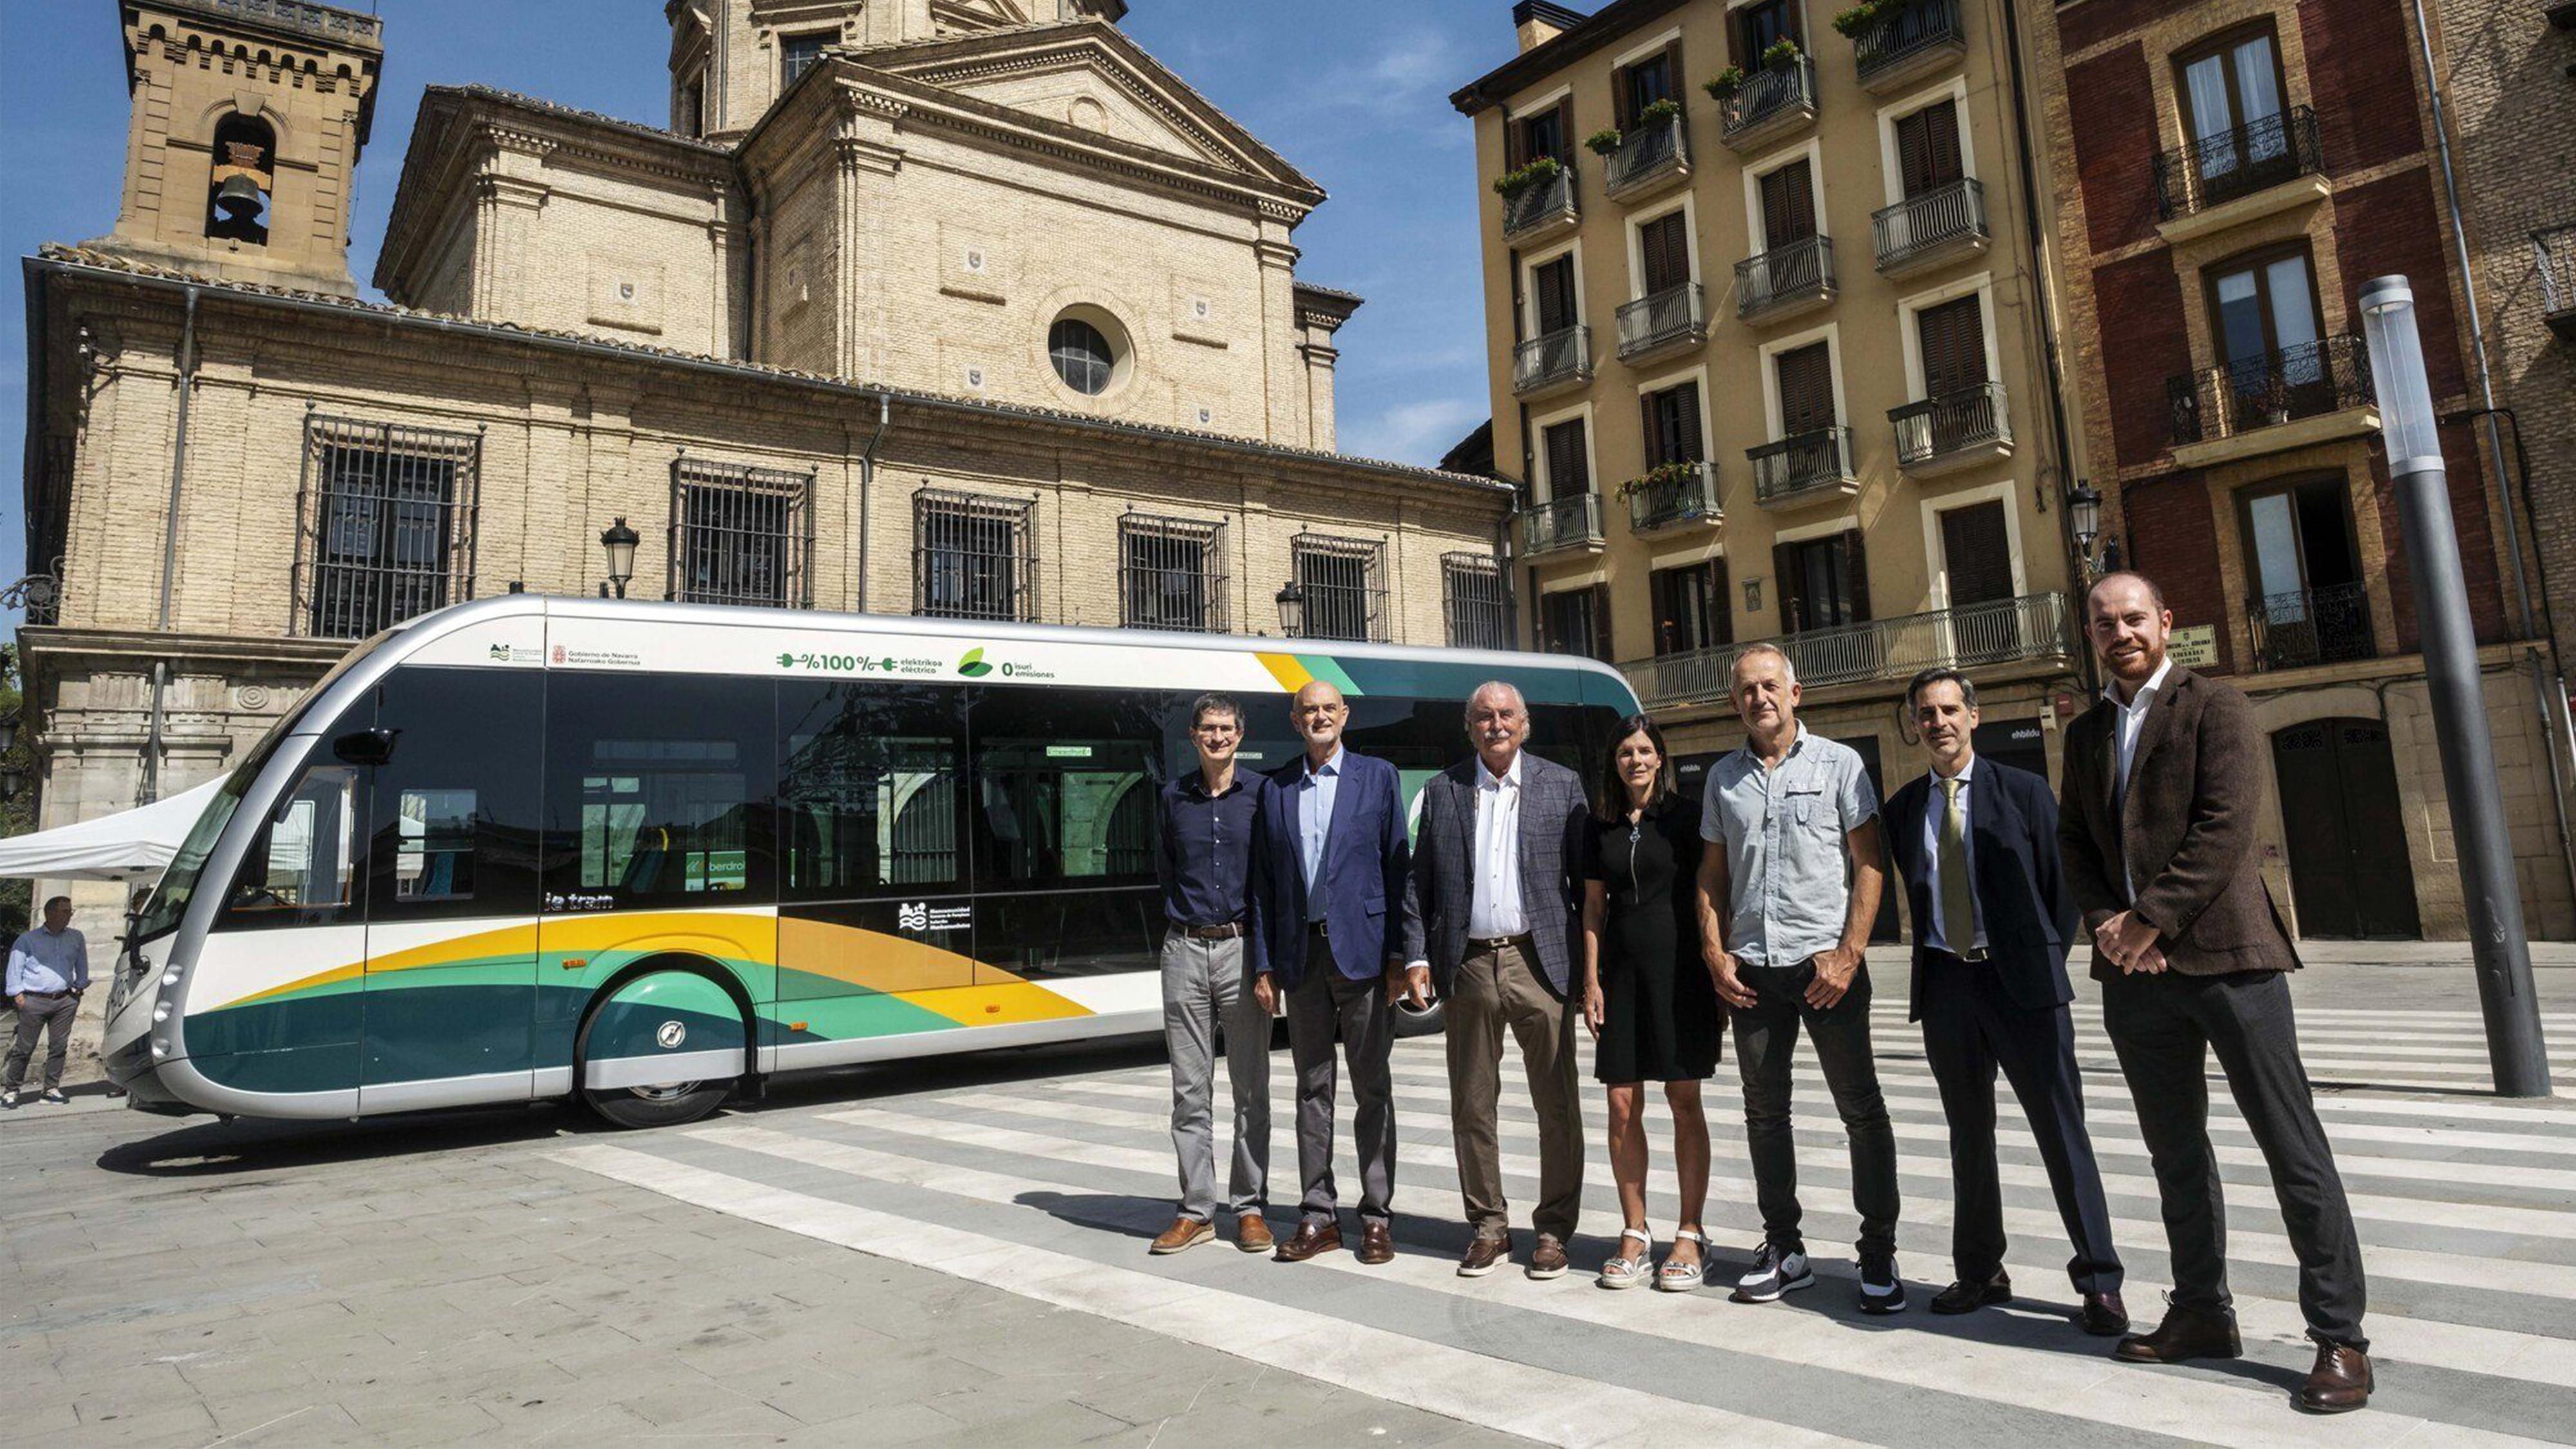 Nous avons eu le plaisir d'assister à la présentation des nouveaux bus Transports Ciutat Comtal (TCC) du groupe Moventis à Pampelune